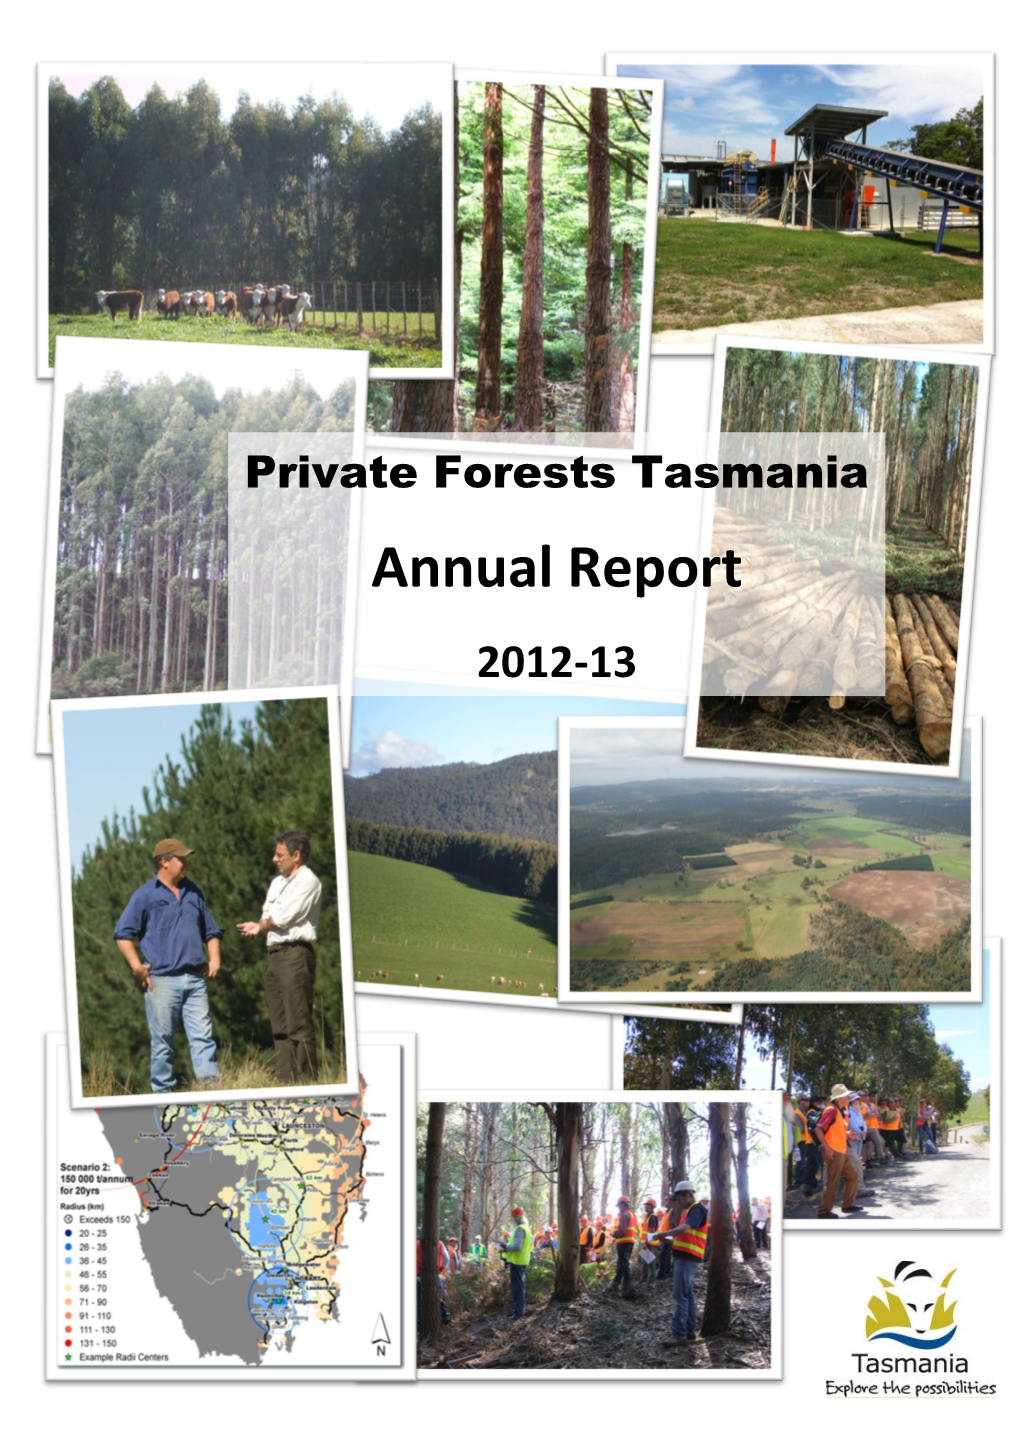 PFT Annual Report 2012-13